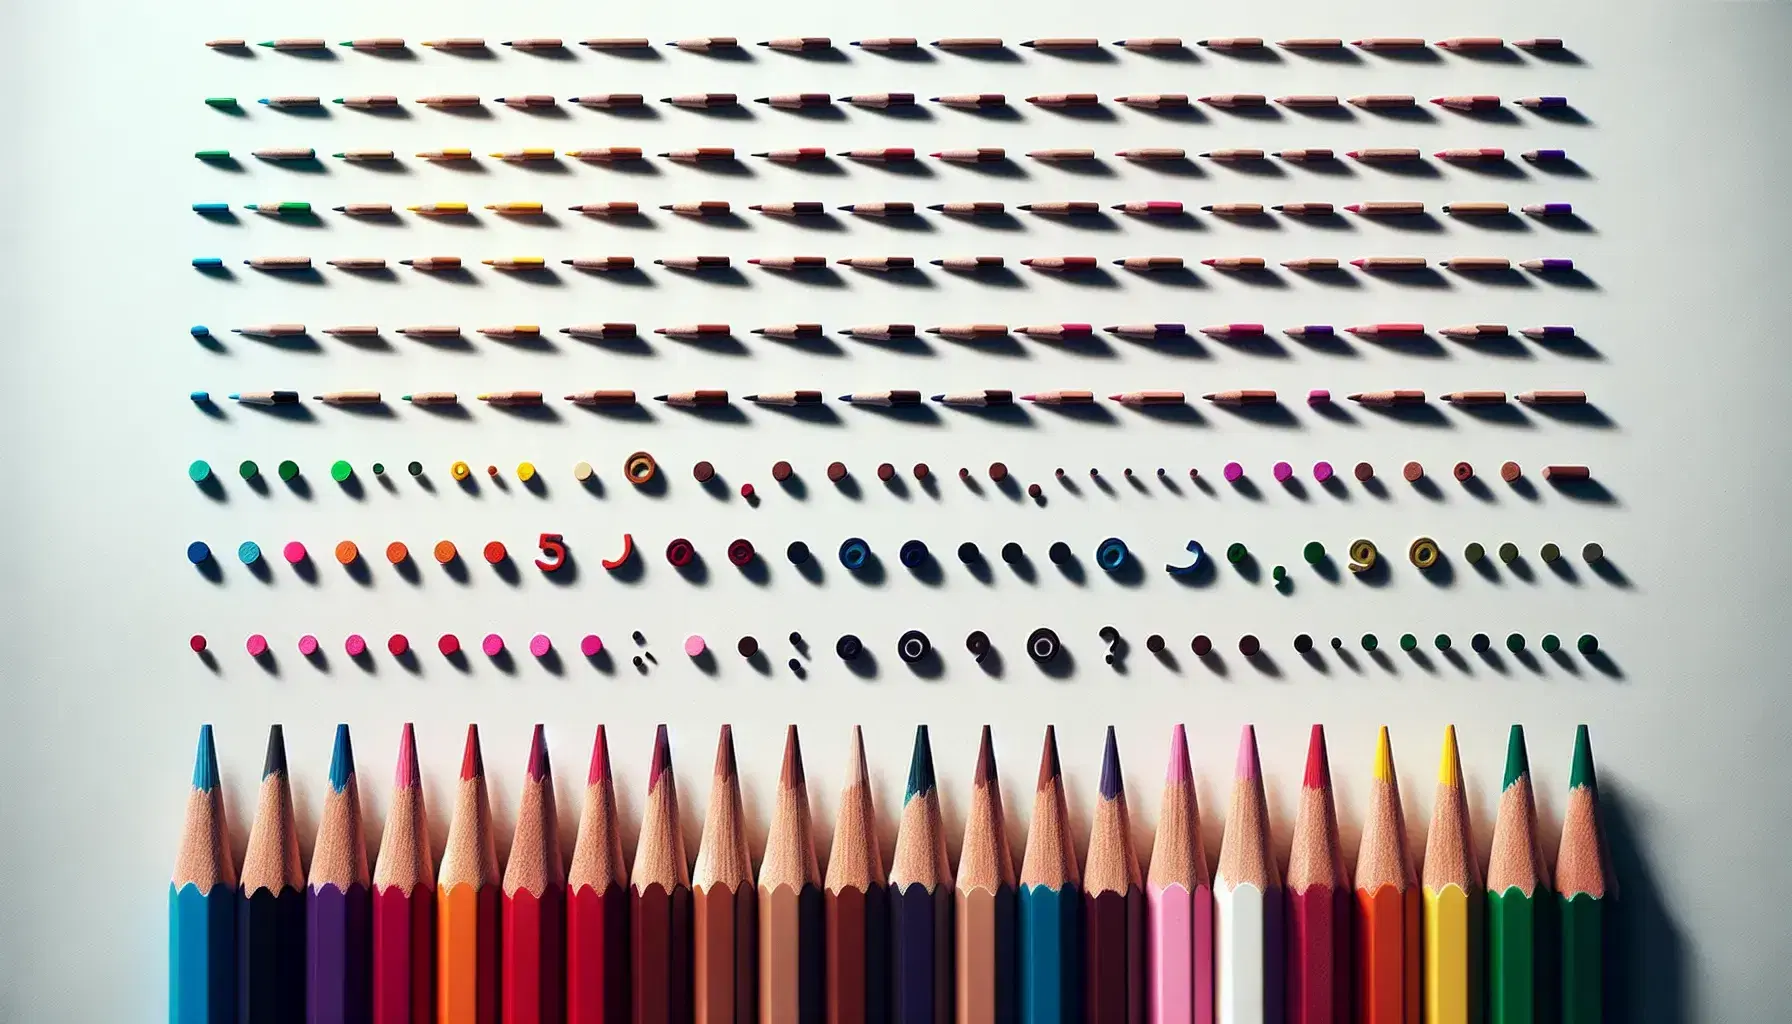 Lápices de colores alineados con puntas afiladas hacia la derecha y signos de puntuación dibujados en frente sobre fondo blanco.